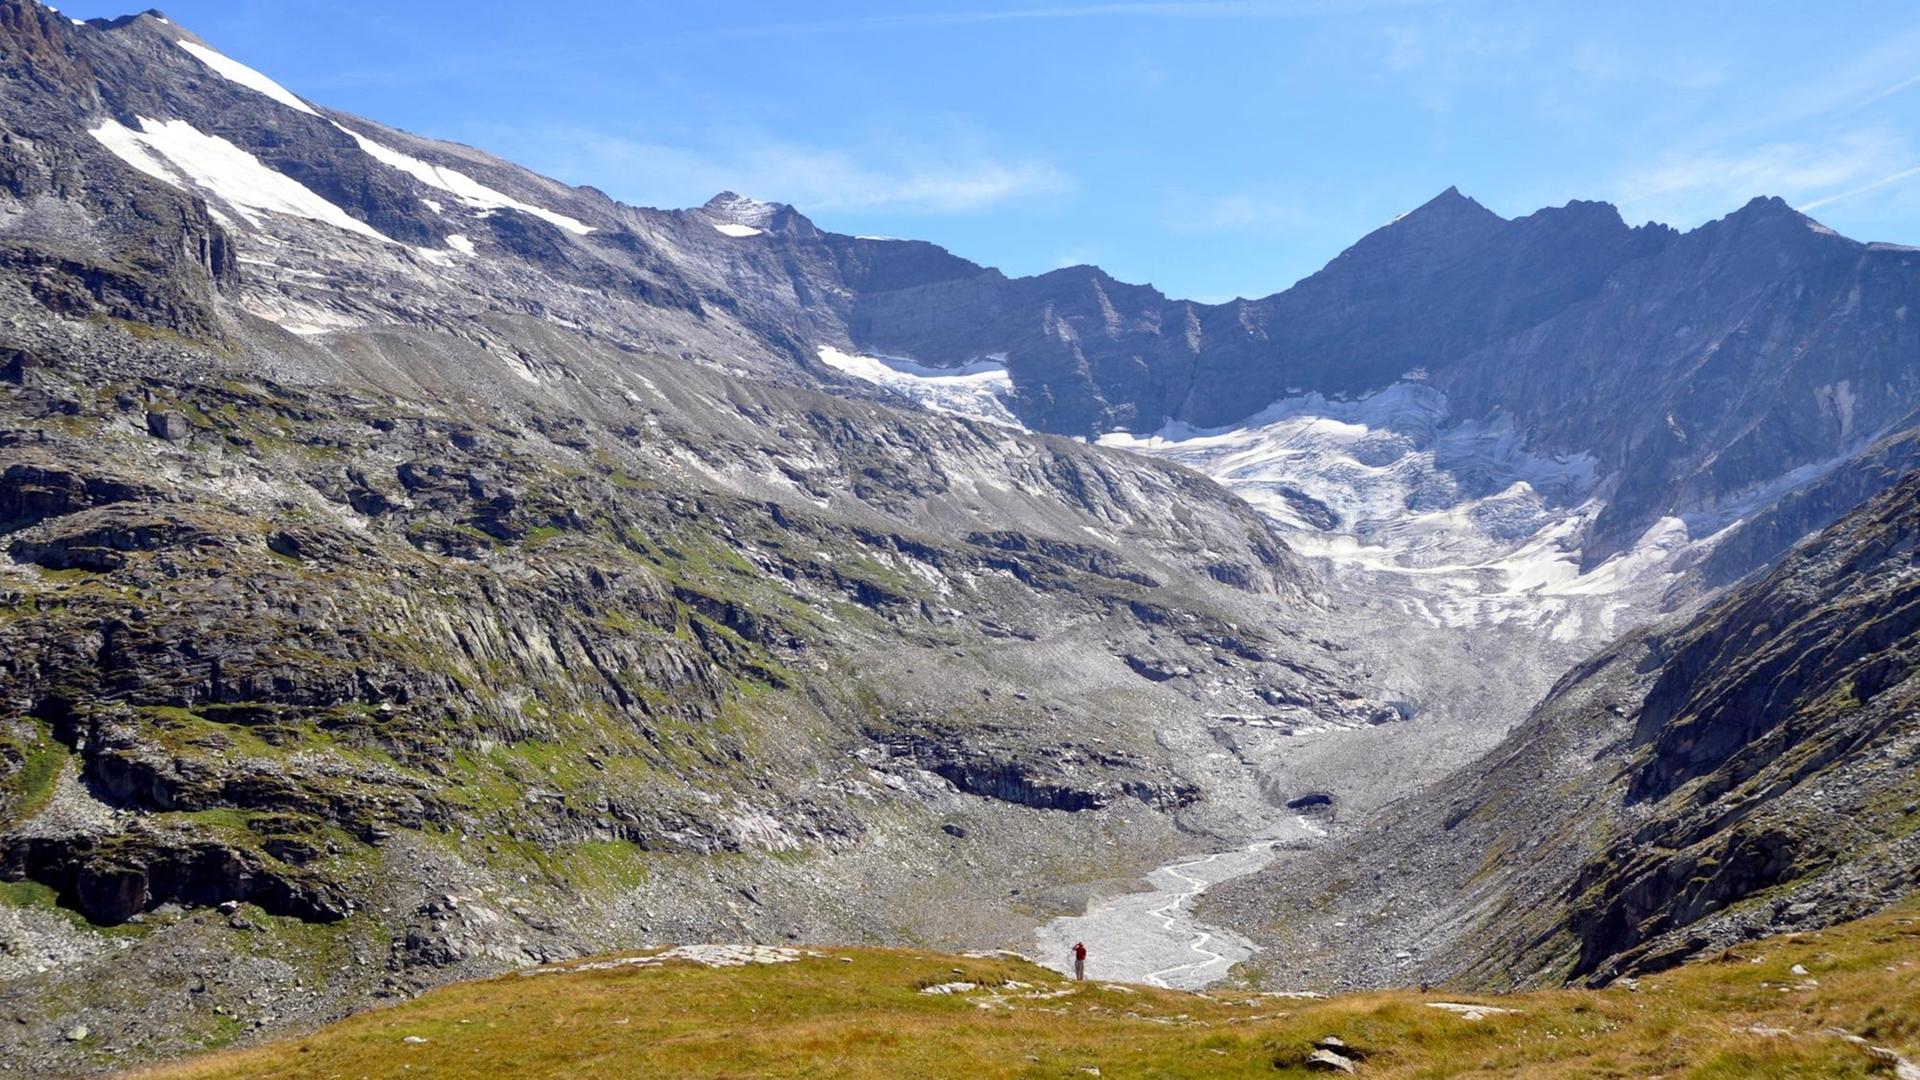 Blick auf das Ödenwinkelkees in der Weißsee Gletscherwelt in den österreichischen Alpen.